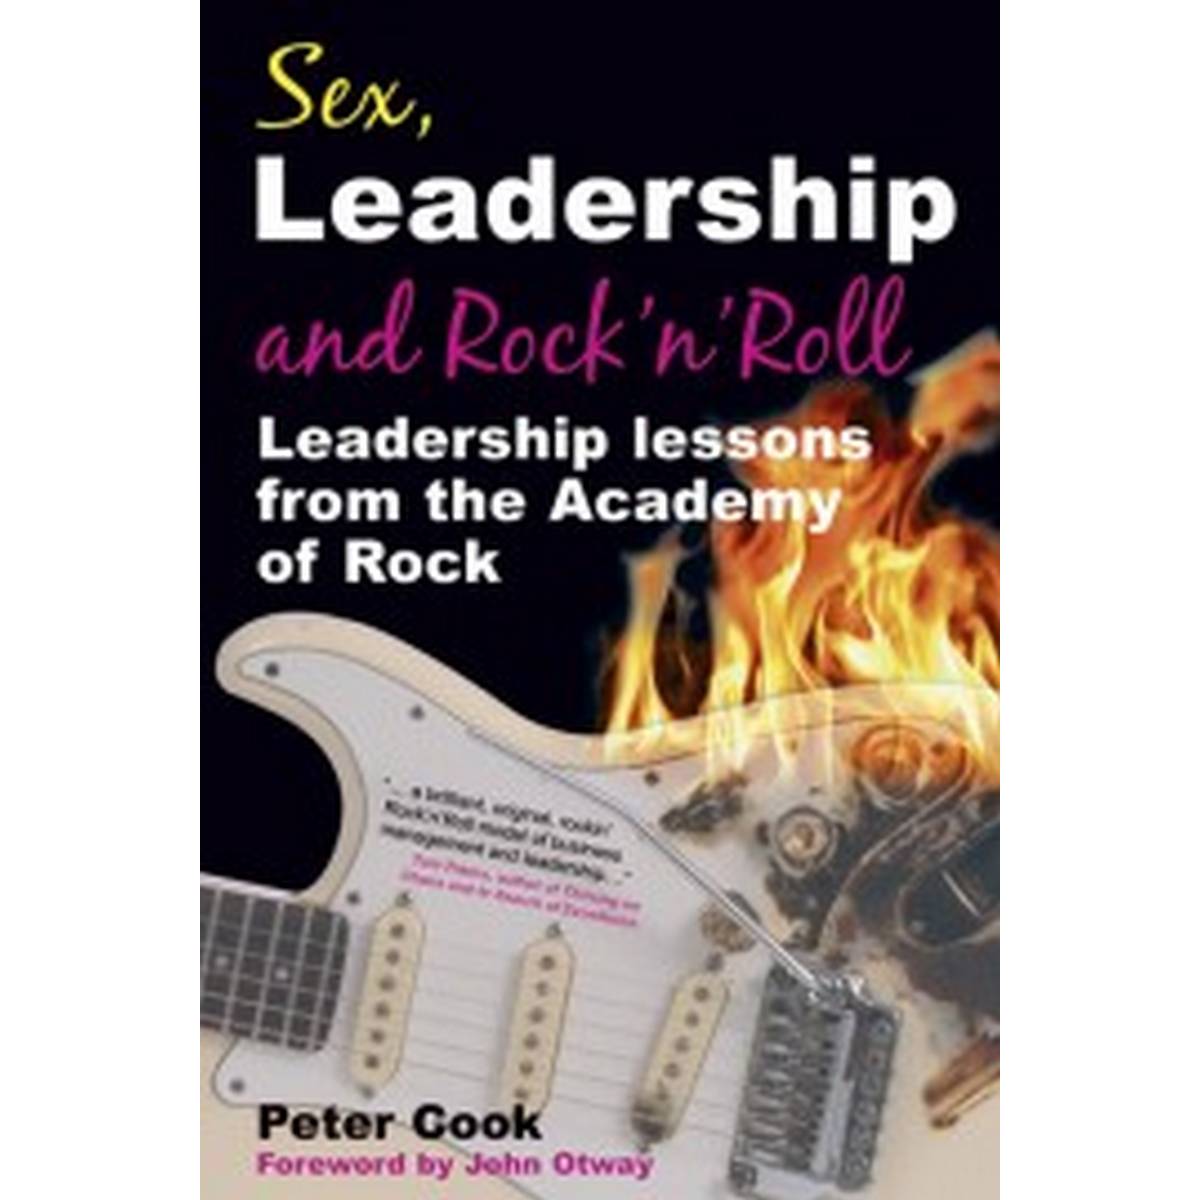 Sex, Leadership & Rock 'n' Roll